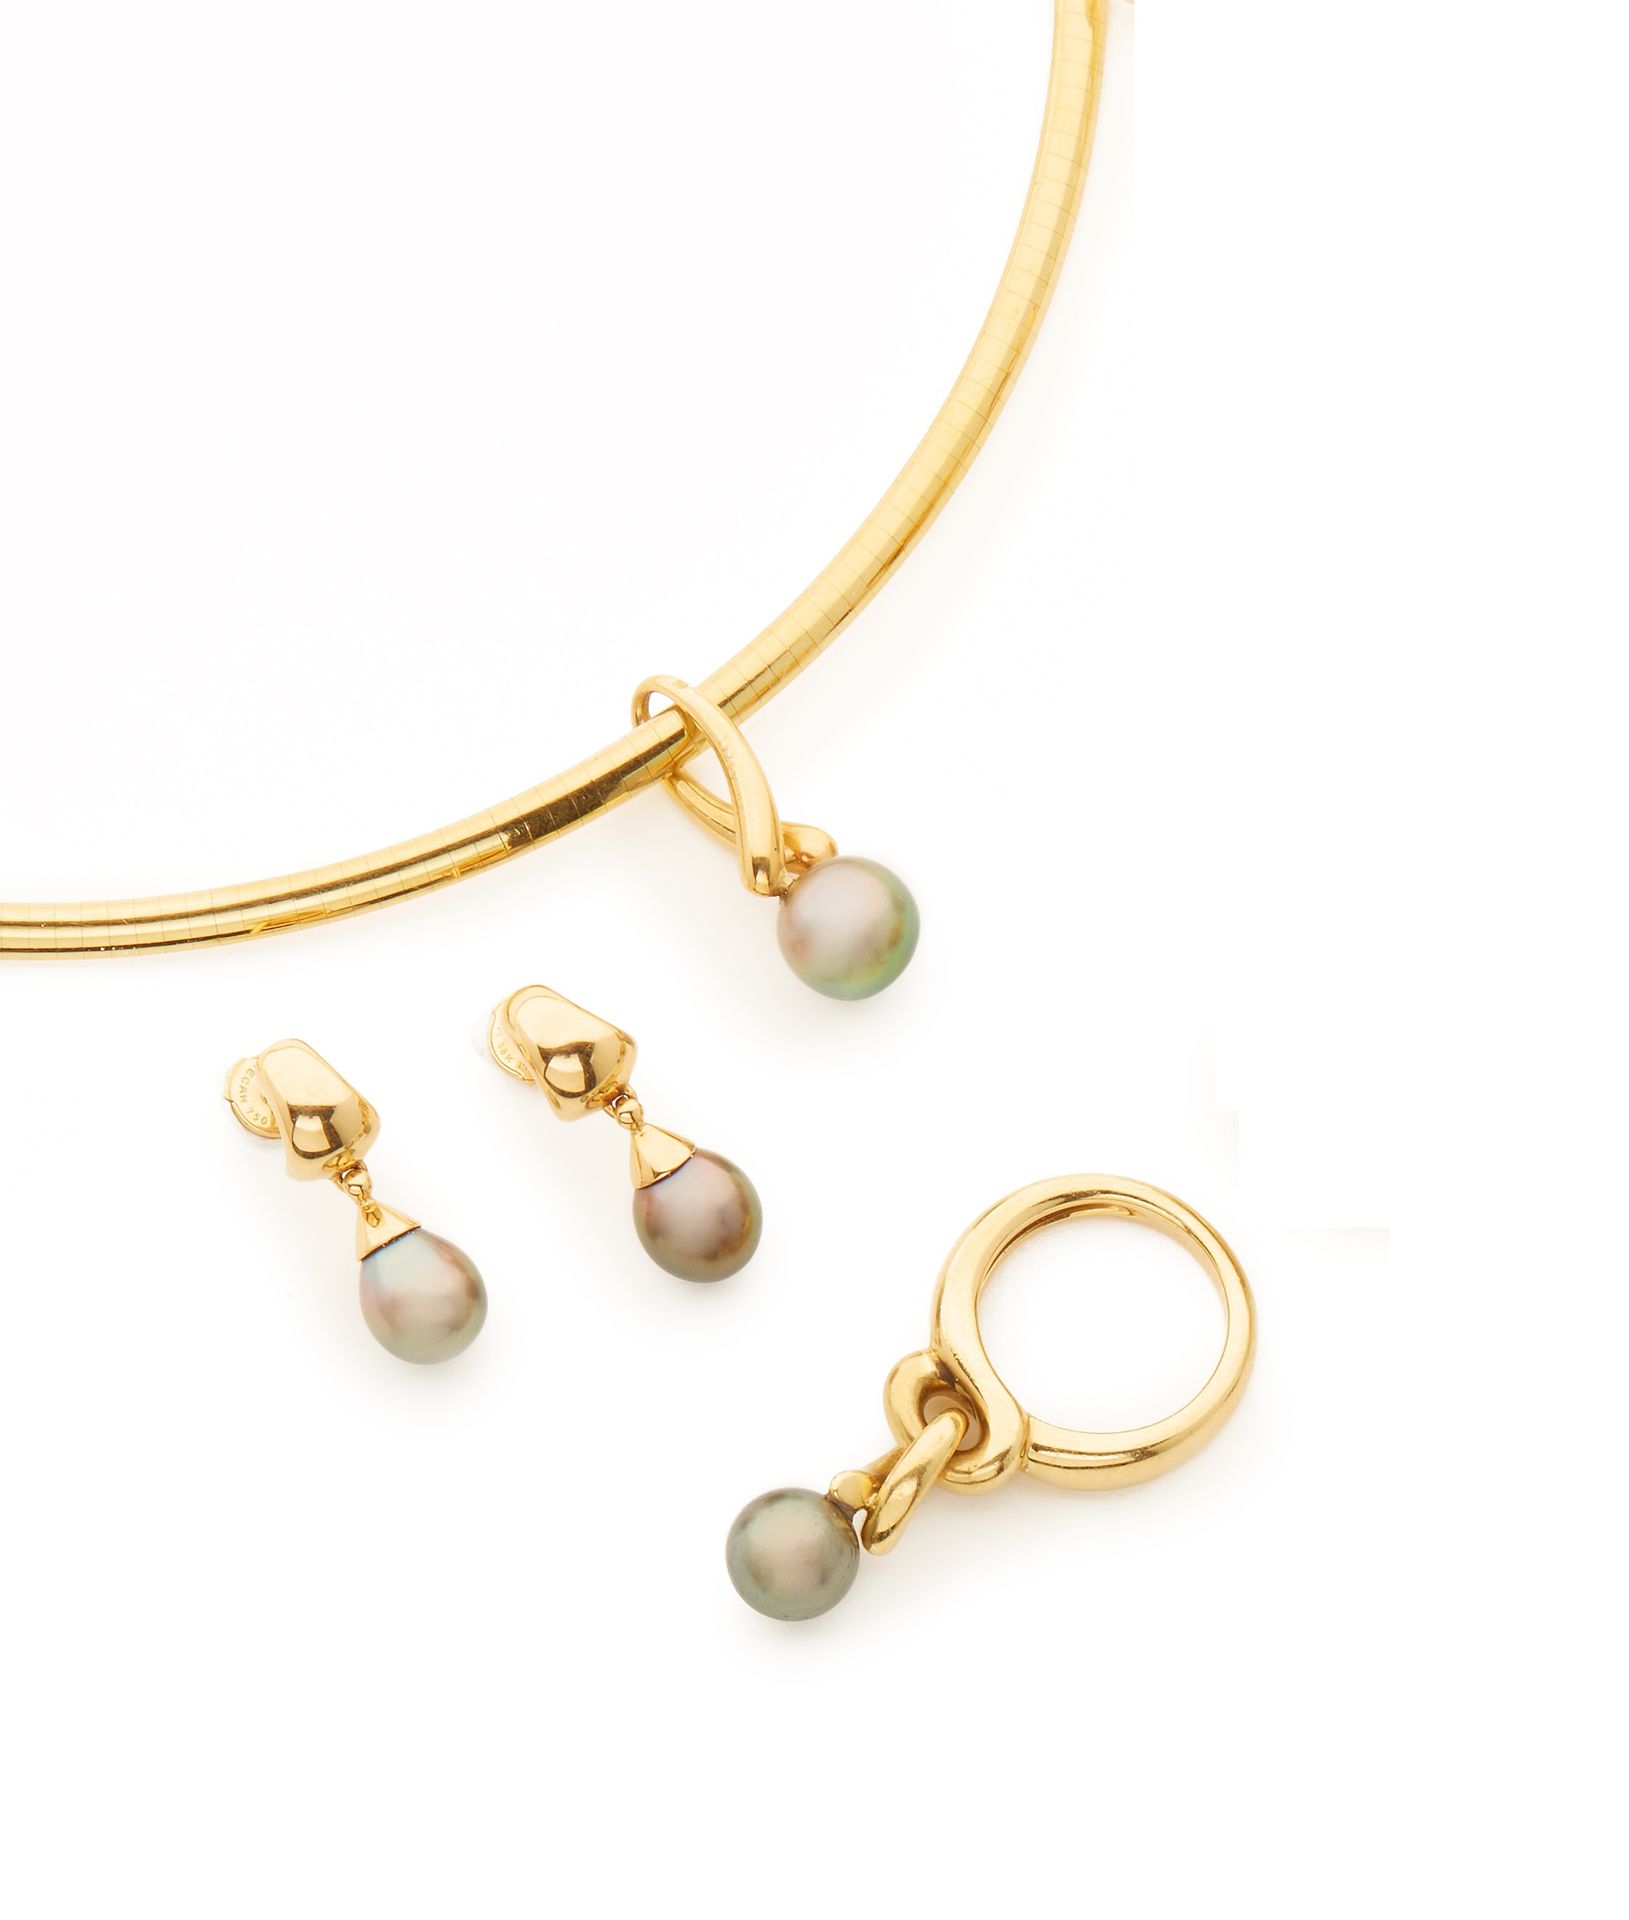 Null 茅伯辛 
18K黄金和珍珠套装包括：项链、耳环和戒指 
毛重：51.5克 
在一个案例中 - 文件